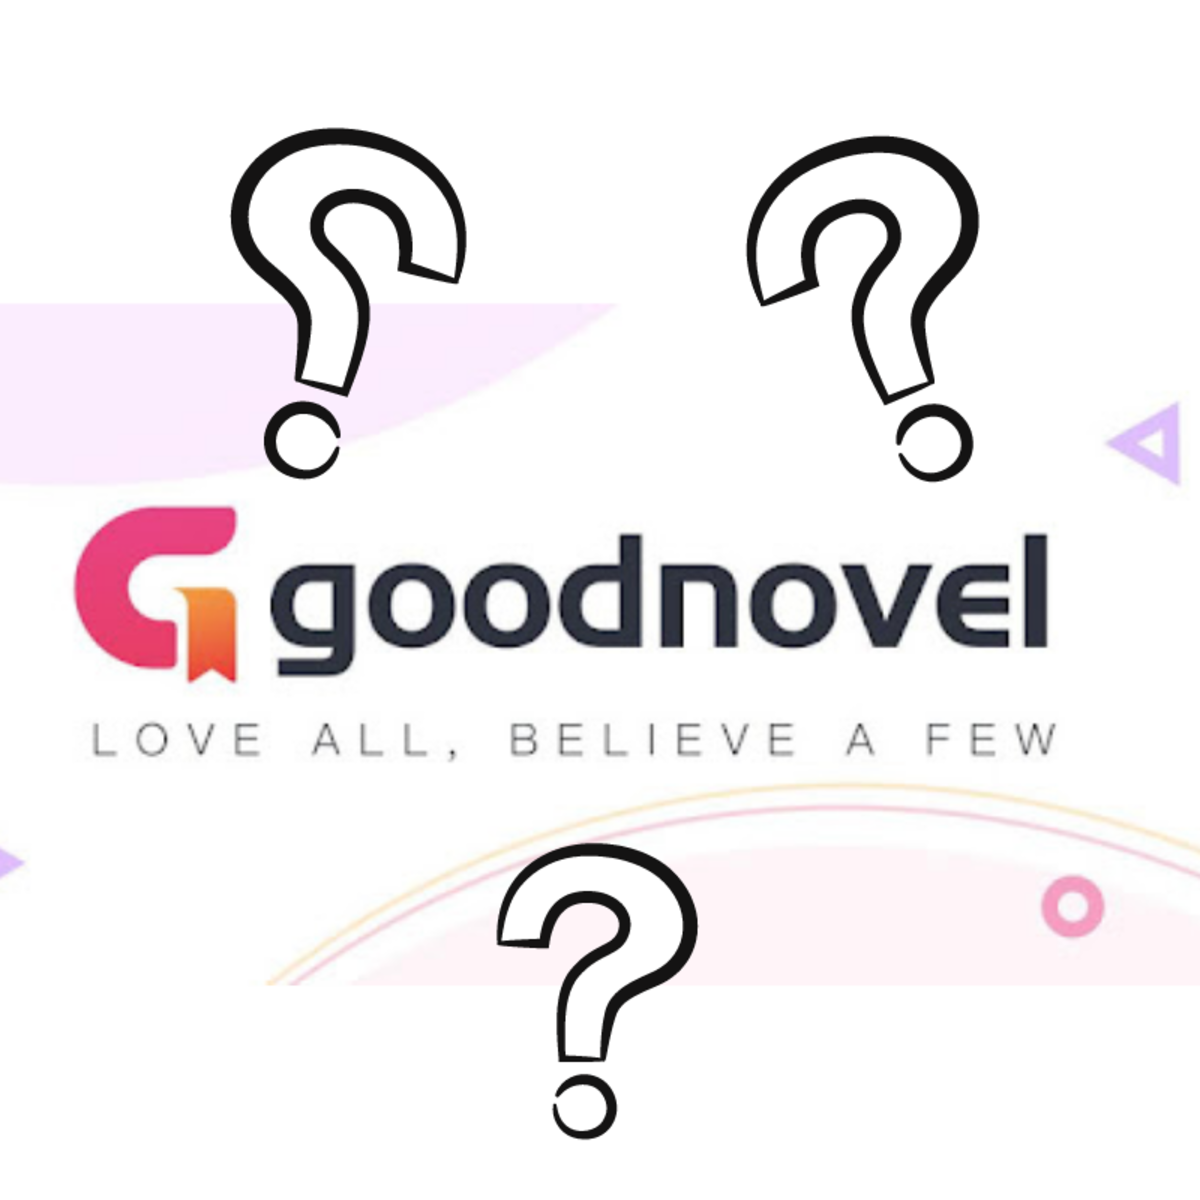 Goodnovel: Is It a Legit Author Platform?